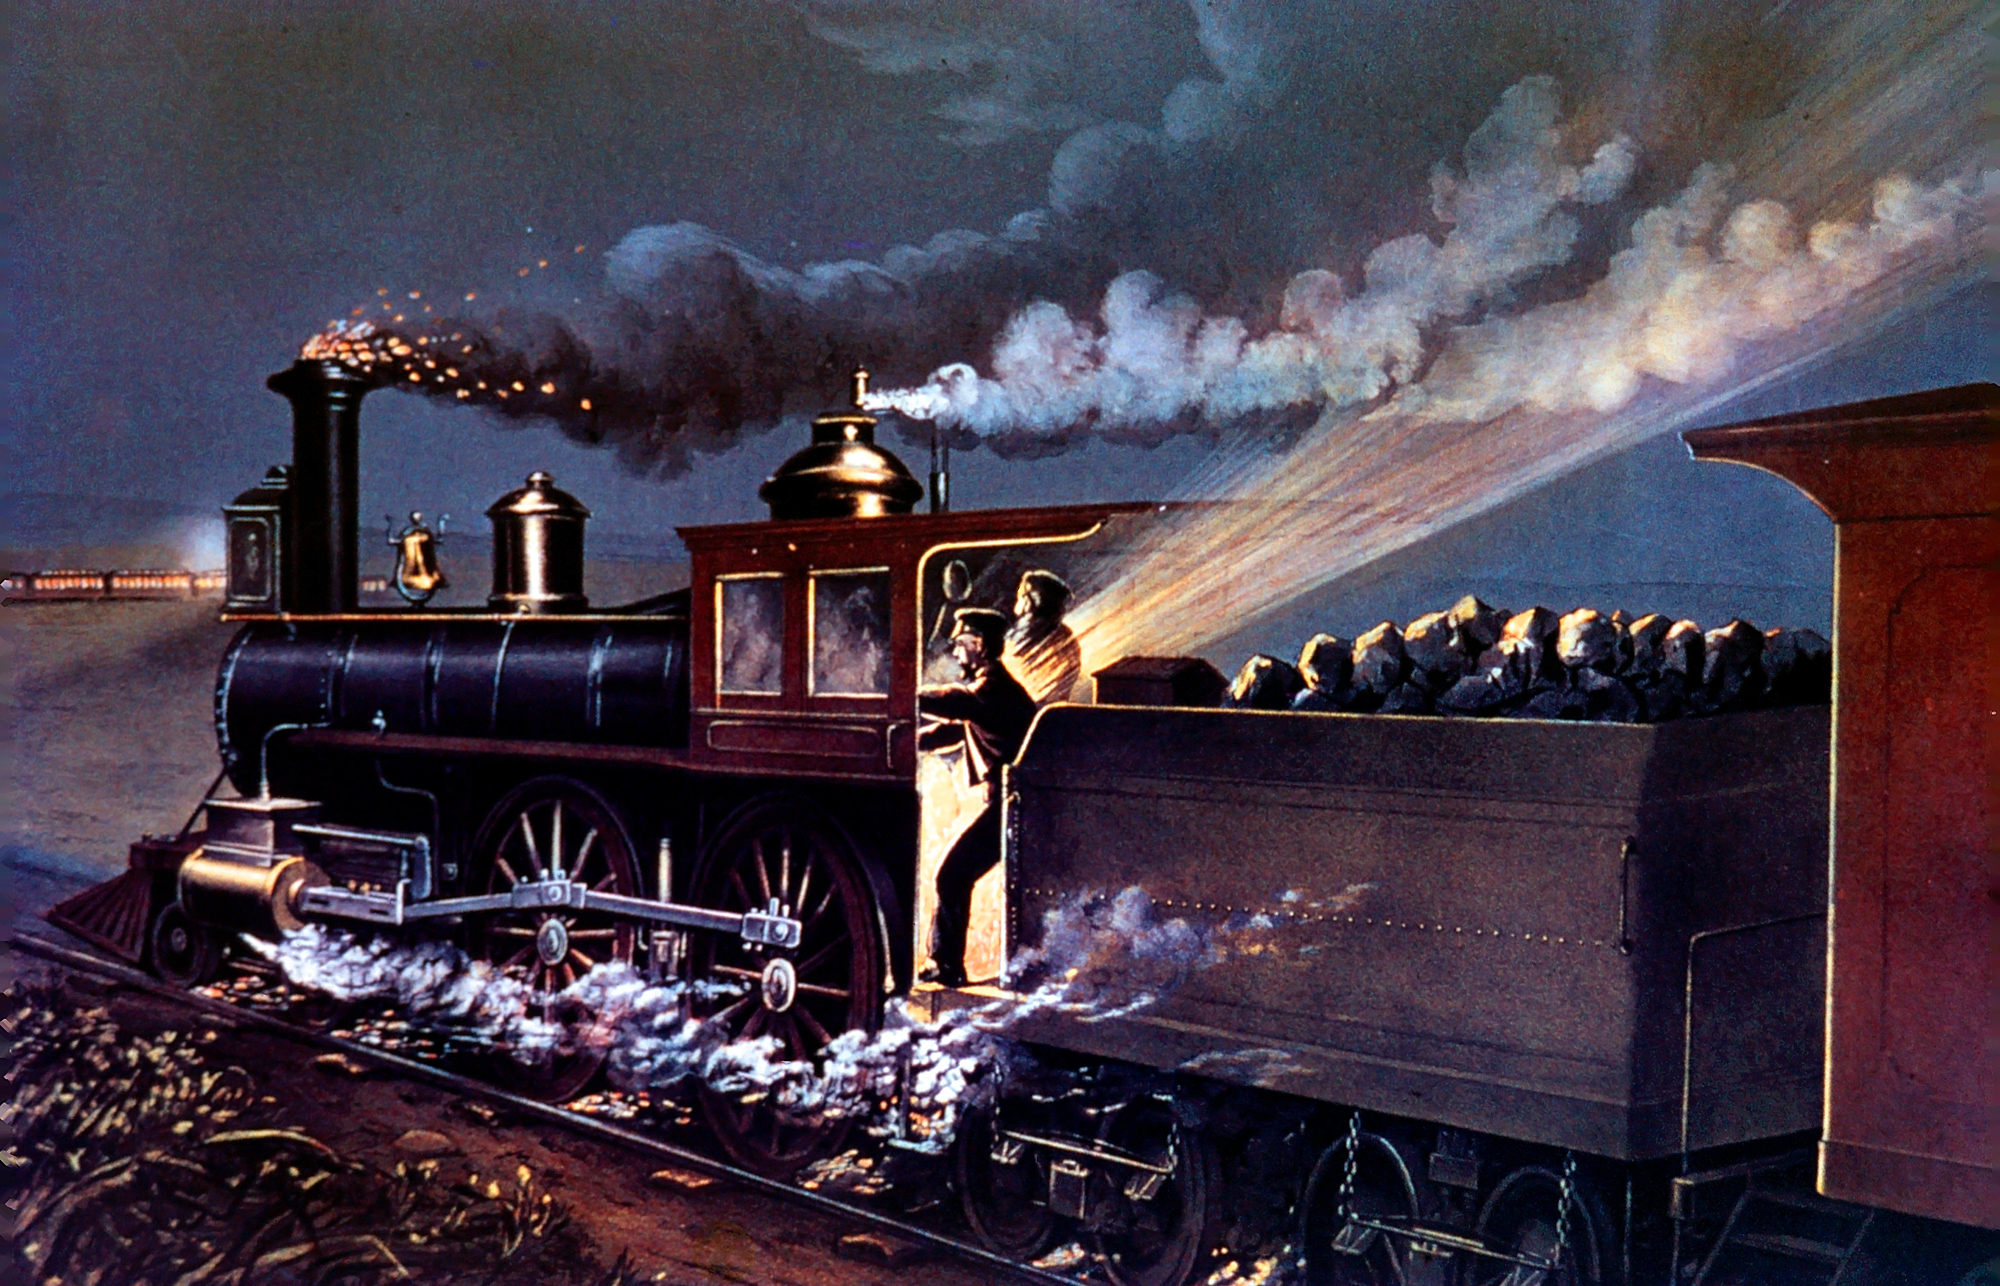 industrial revolution train